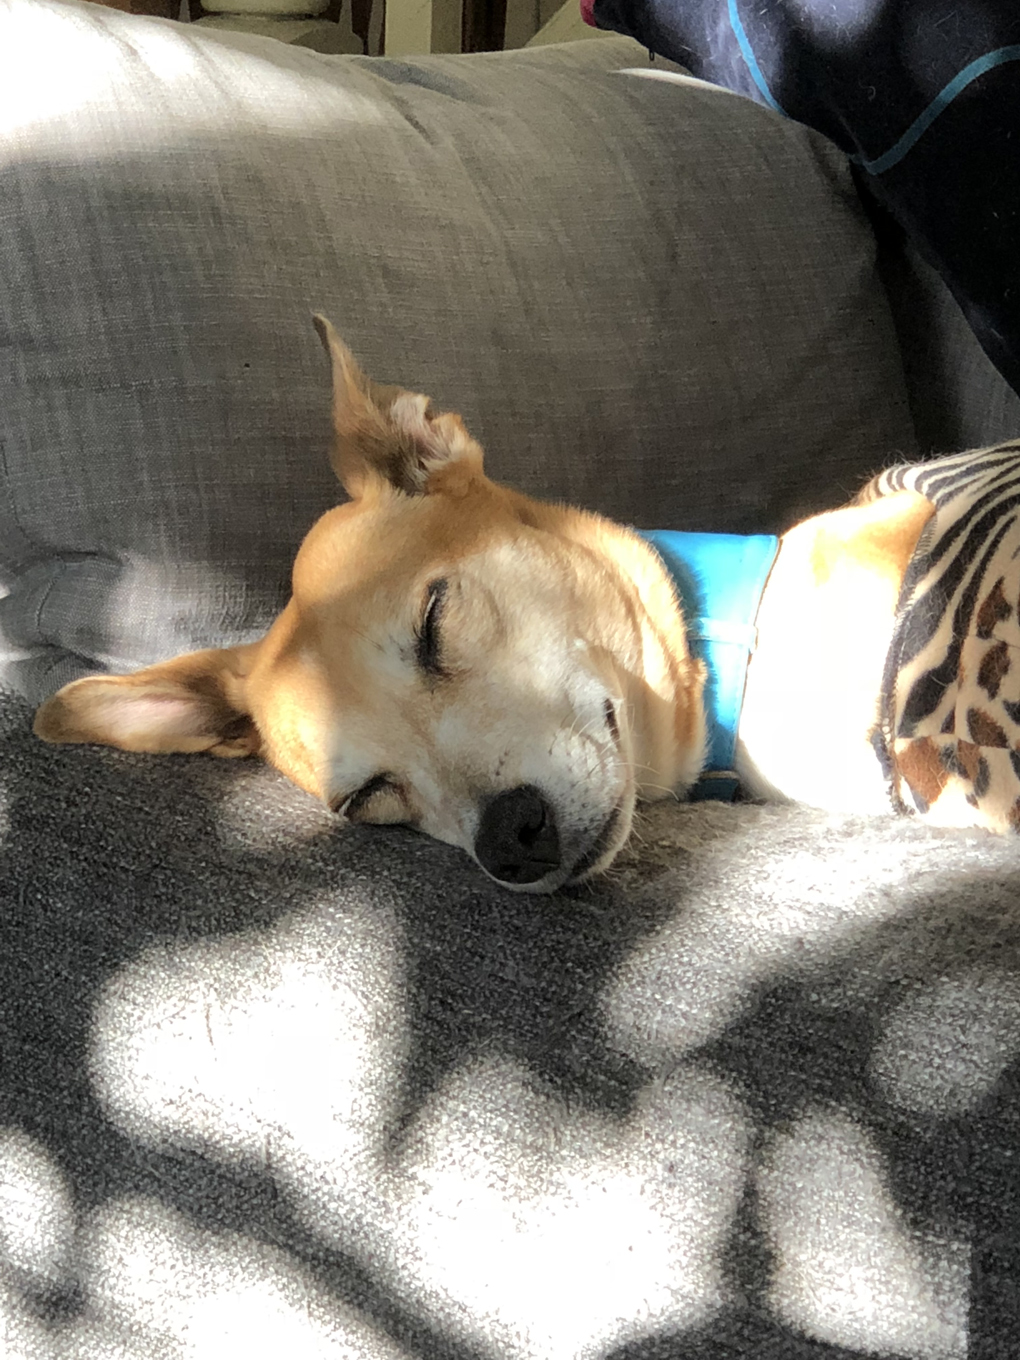 A dog asleep on a sofa in the sunlight